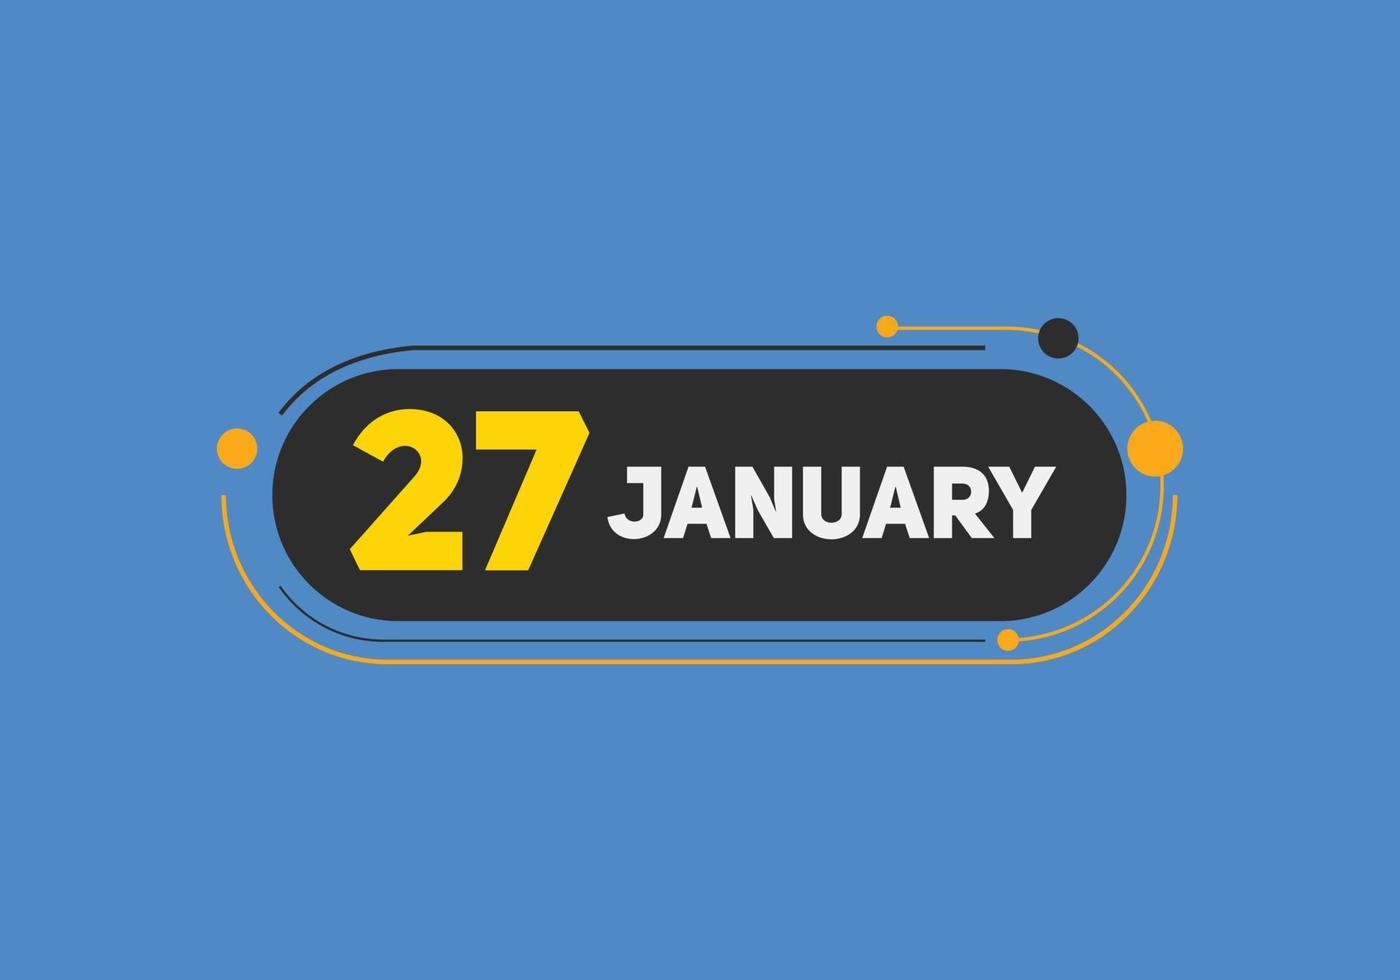 lembrete de calendário de 27 de janeiro. 27 de janeiro modelo de ícone de calendário diário. modelo de design de ícone de calendário 27 de janeiro. ilustração vetorial vetor